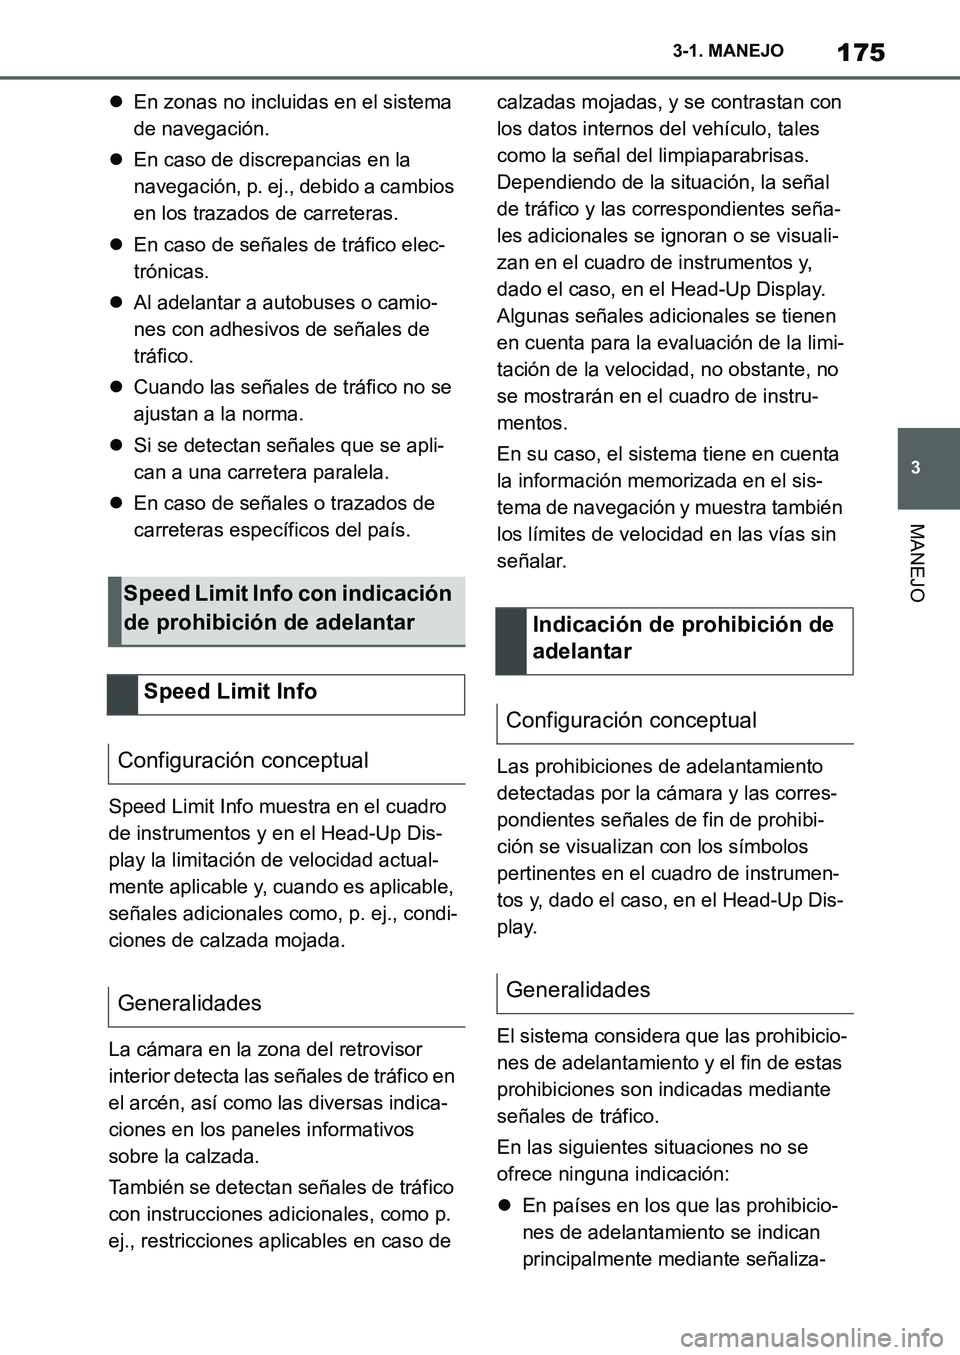 TOYOTA SUPRA 2022  Manuale de Empleo (in Spanish) 175
3 3-1. MANEJO
MANEJO
En zonas no incluidas en el sistema 
de navegación.
En caso de discrepancias en la 
navegación, p. ej., debido a cambios 
en los trazados de carreteras.
En caso de 